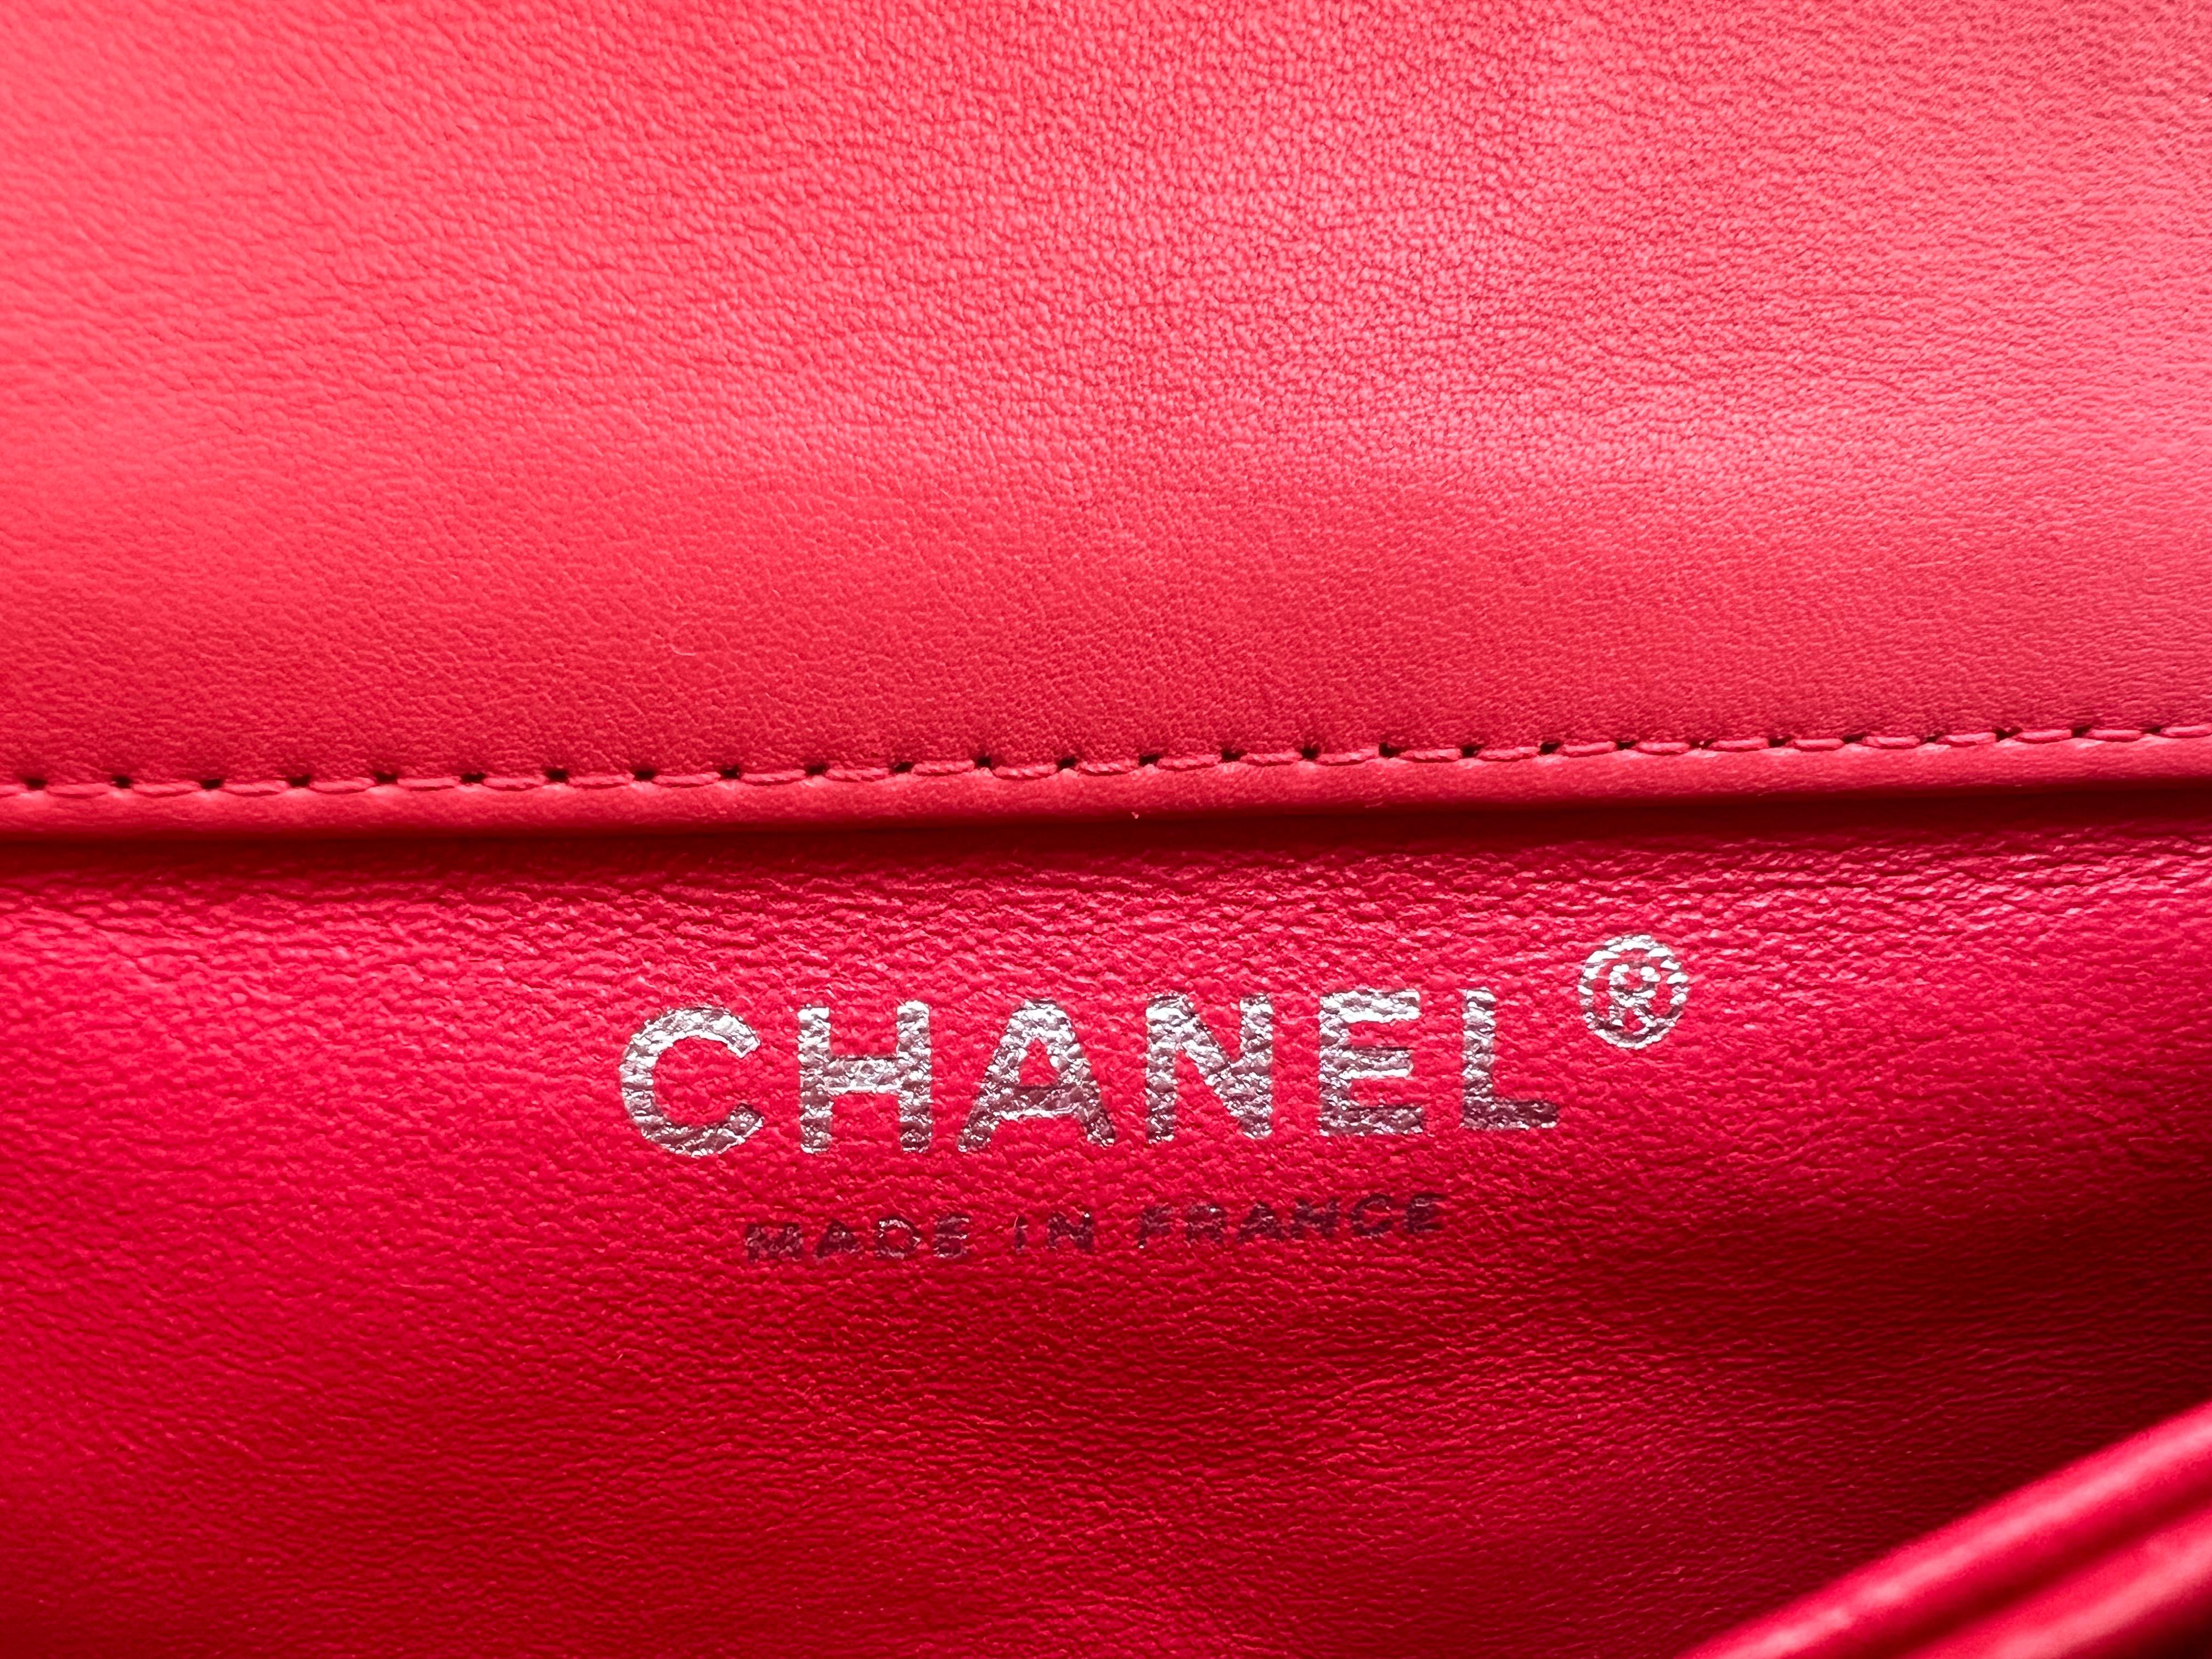 Le Mini Flap de Chanel en cuir verni est un accessoire convoité qui incarne l'élégance intemporelle et le luxe associés à la marque Chanel. Dans une couleur corail vibrante et ornée d'une quincaillerie argentée, cette variante particulière exsude